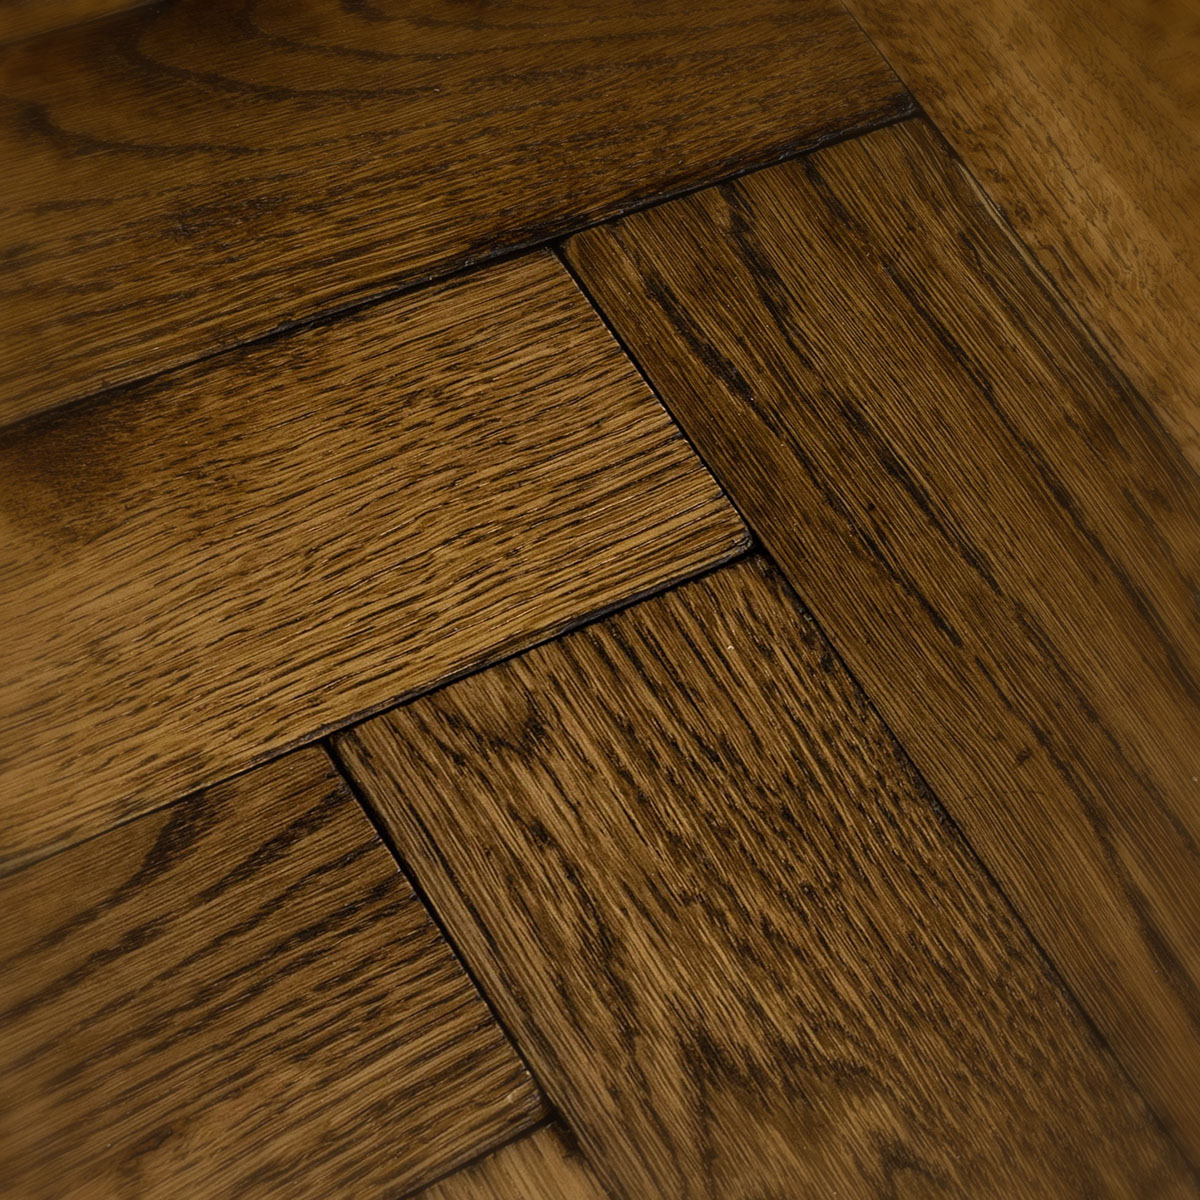 Baker Street - Solid Oak Herringbone Wood Floor 22mm Thick